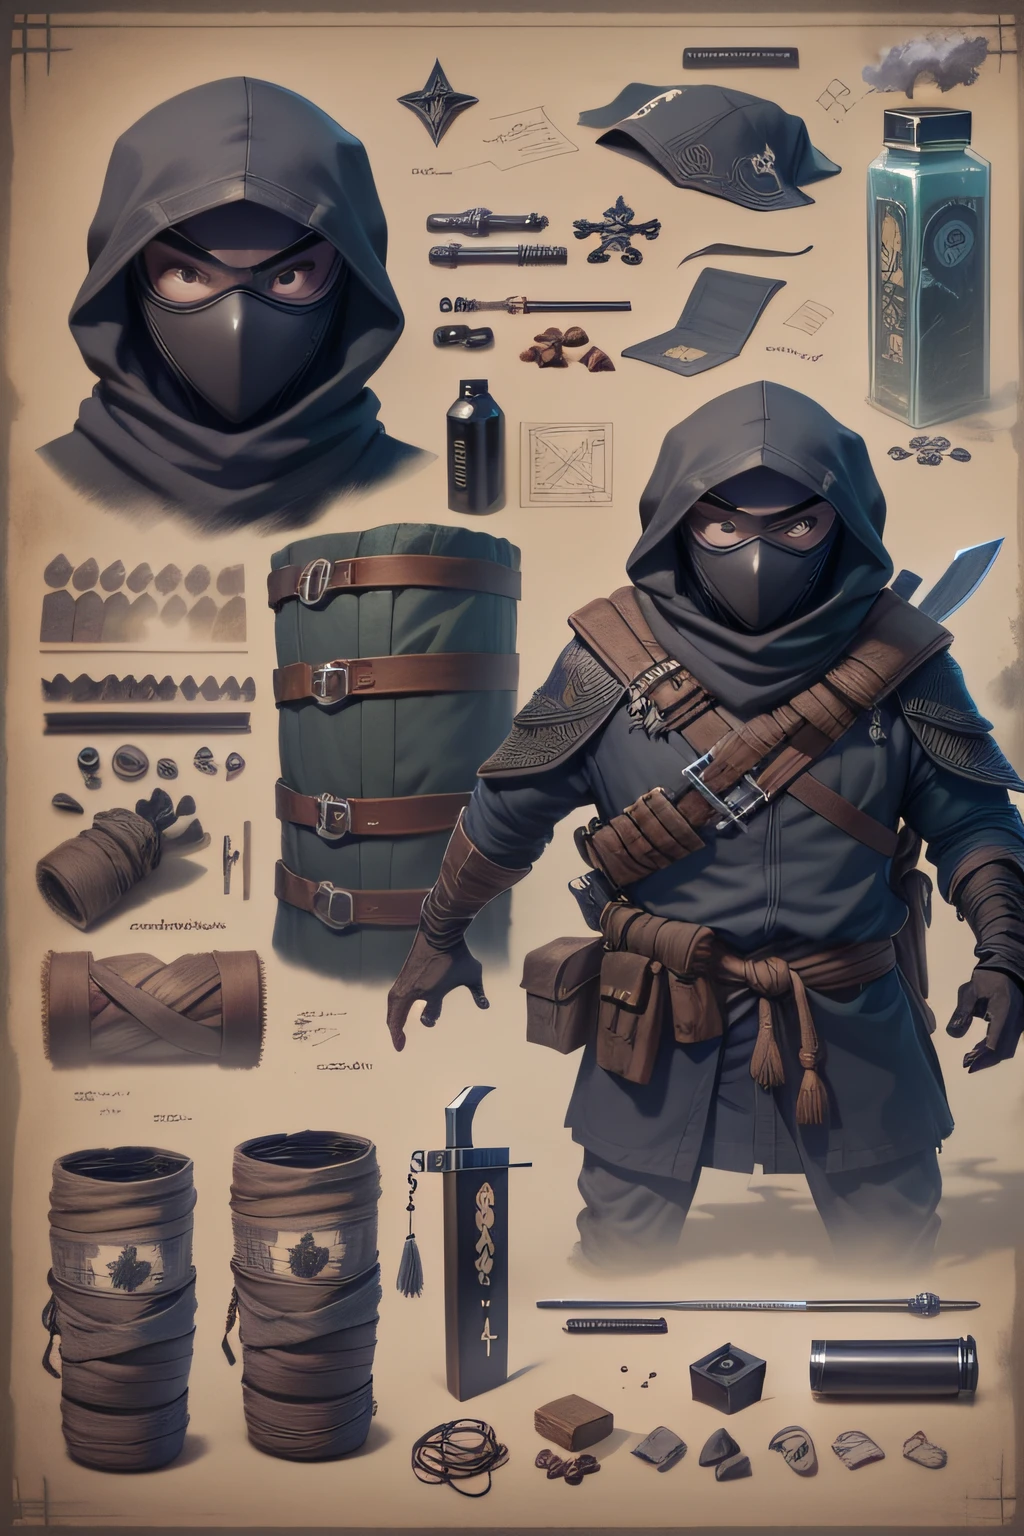 藍圖 狡猾的忍者隱藏在陰影中，準備伏擊敵人. 

側面列出的物品和裝備:
- 黑色面具和服裝 - 鋼手裡劍 - 忍者劍 - 煙霧彈